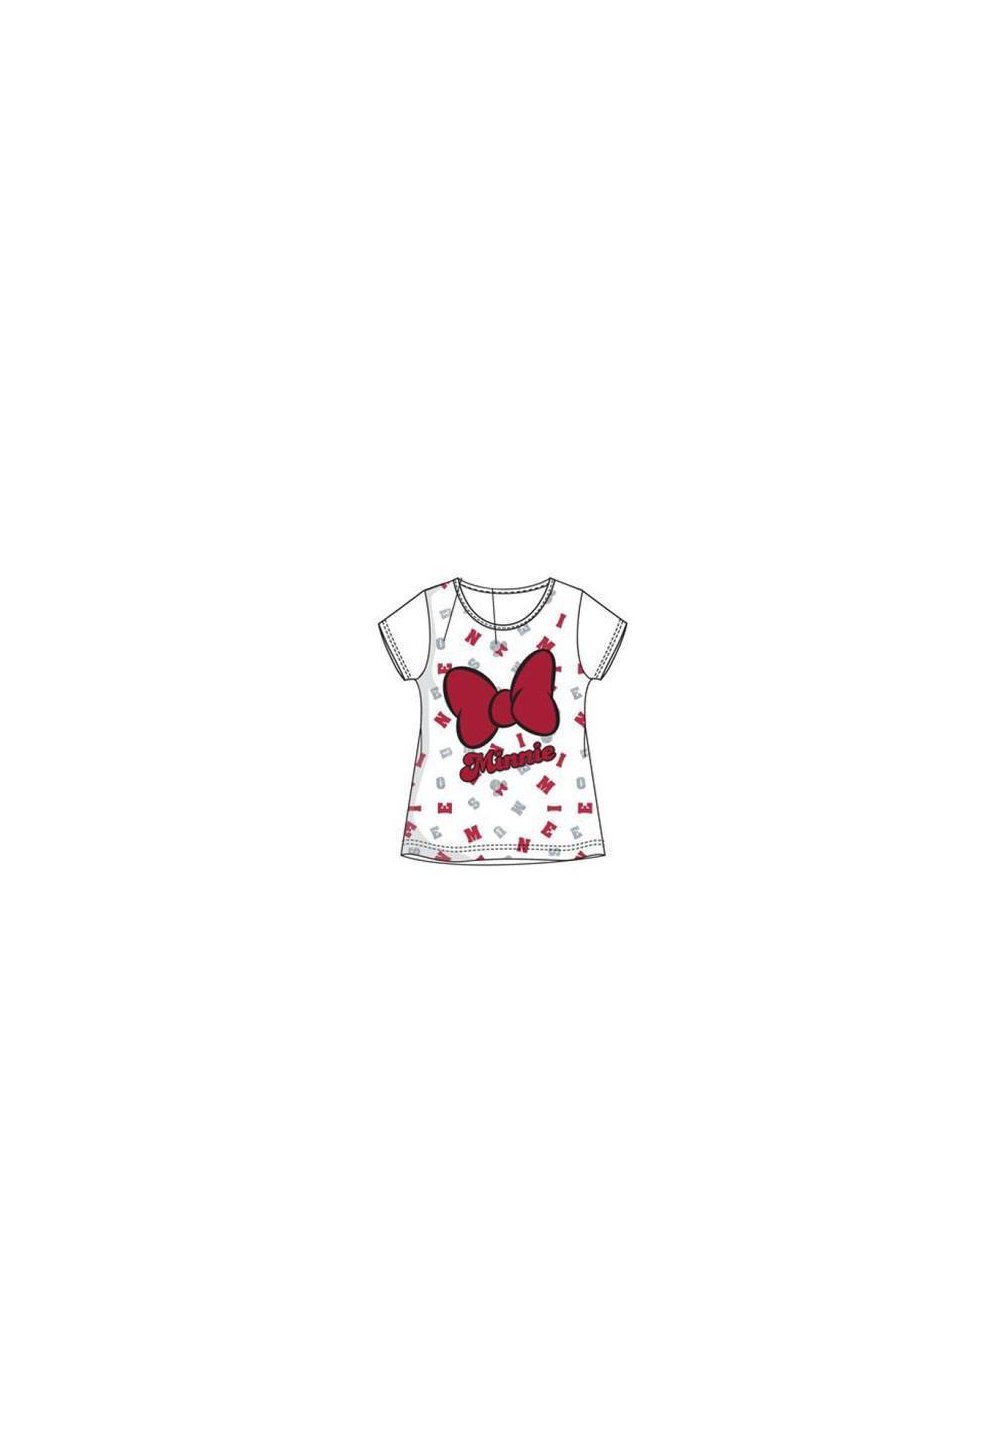 Tricou, alb cu fundita rosie, Minnie Mouse Prichindel